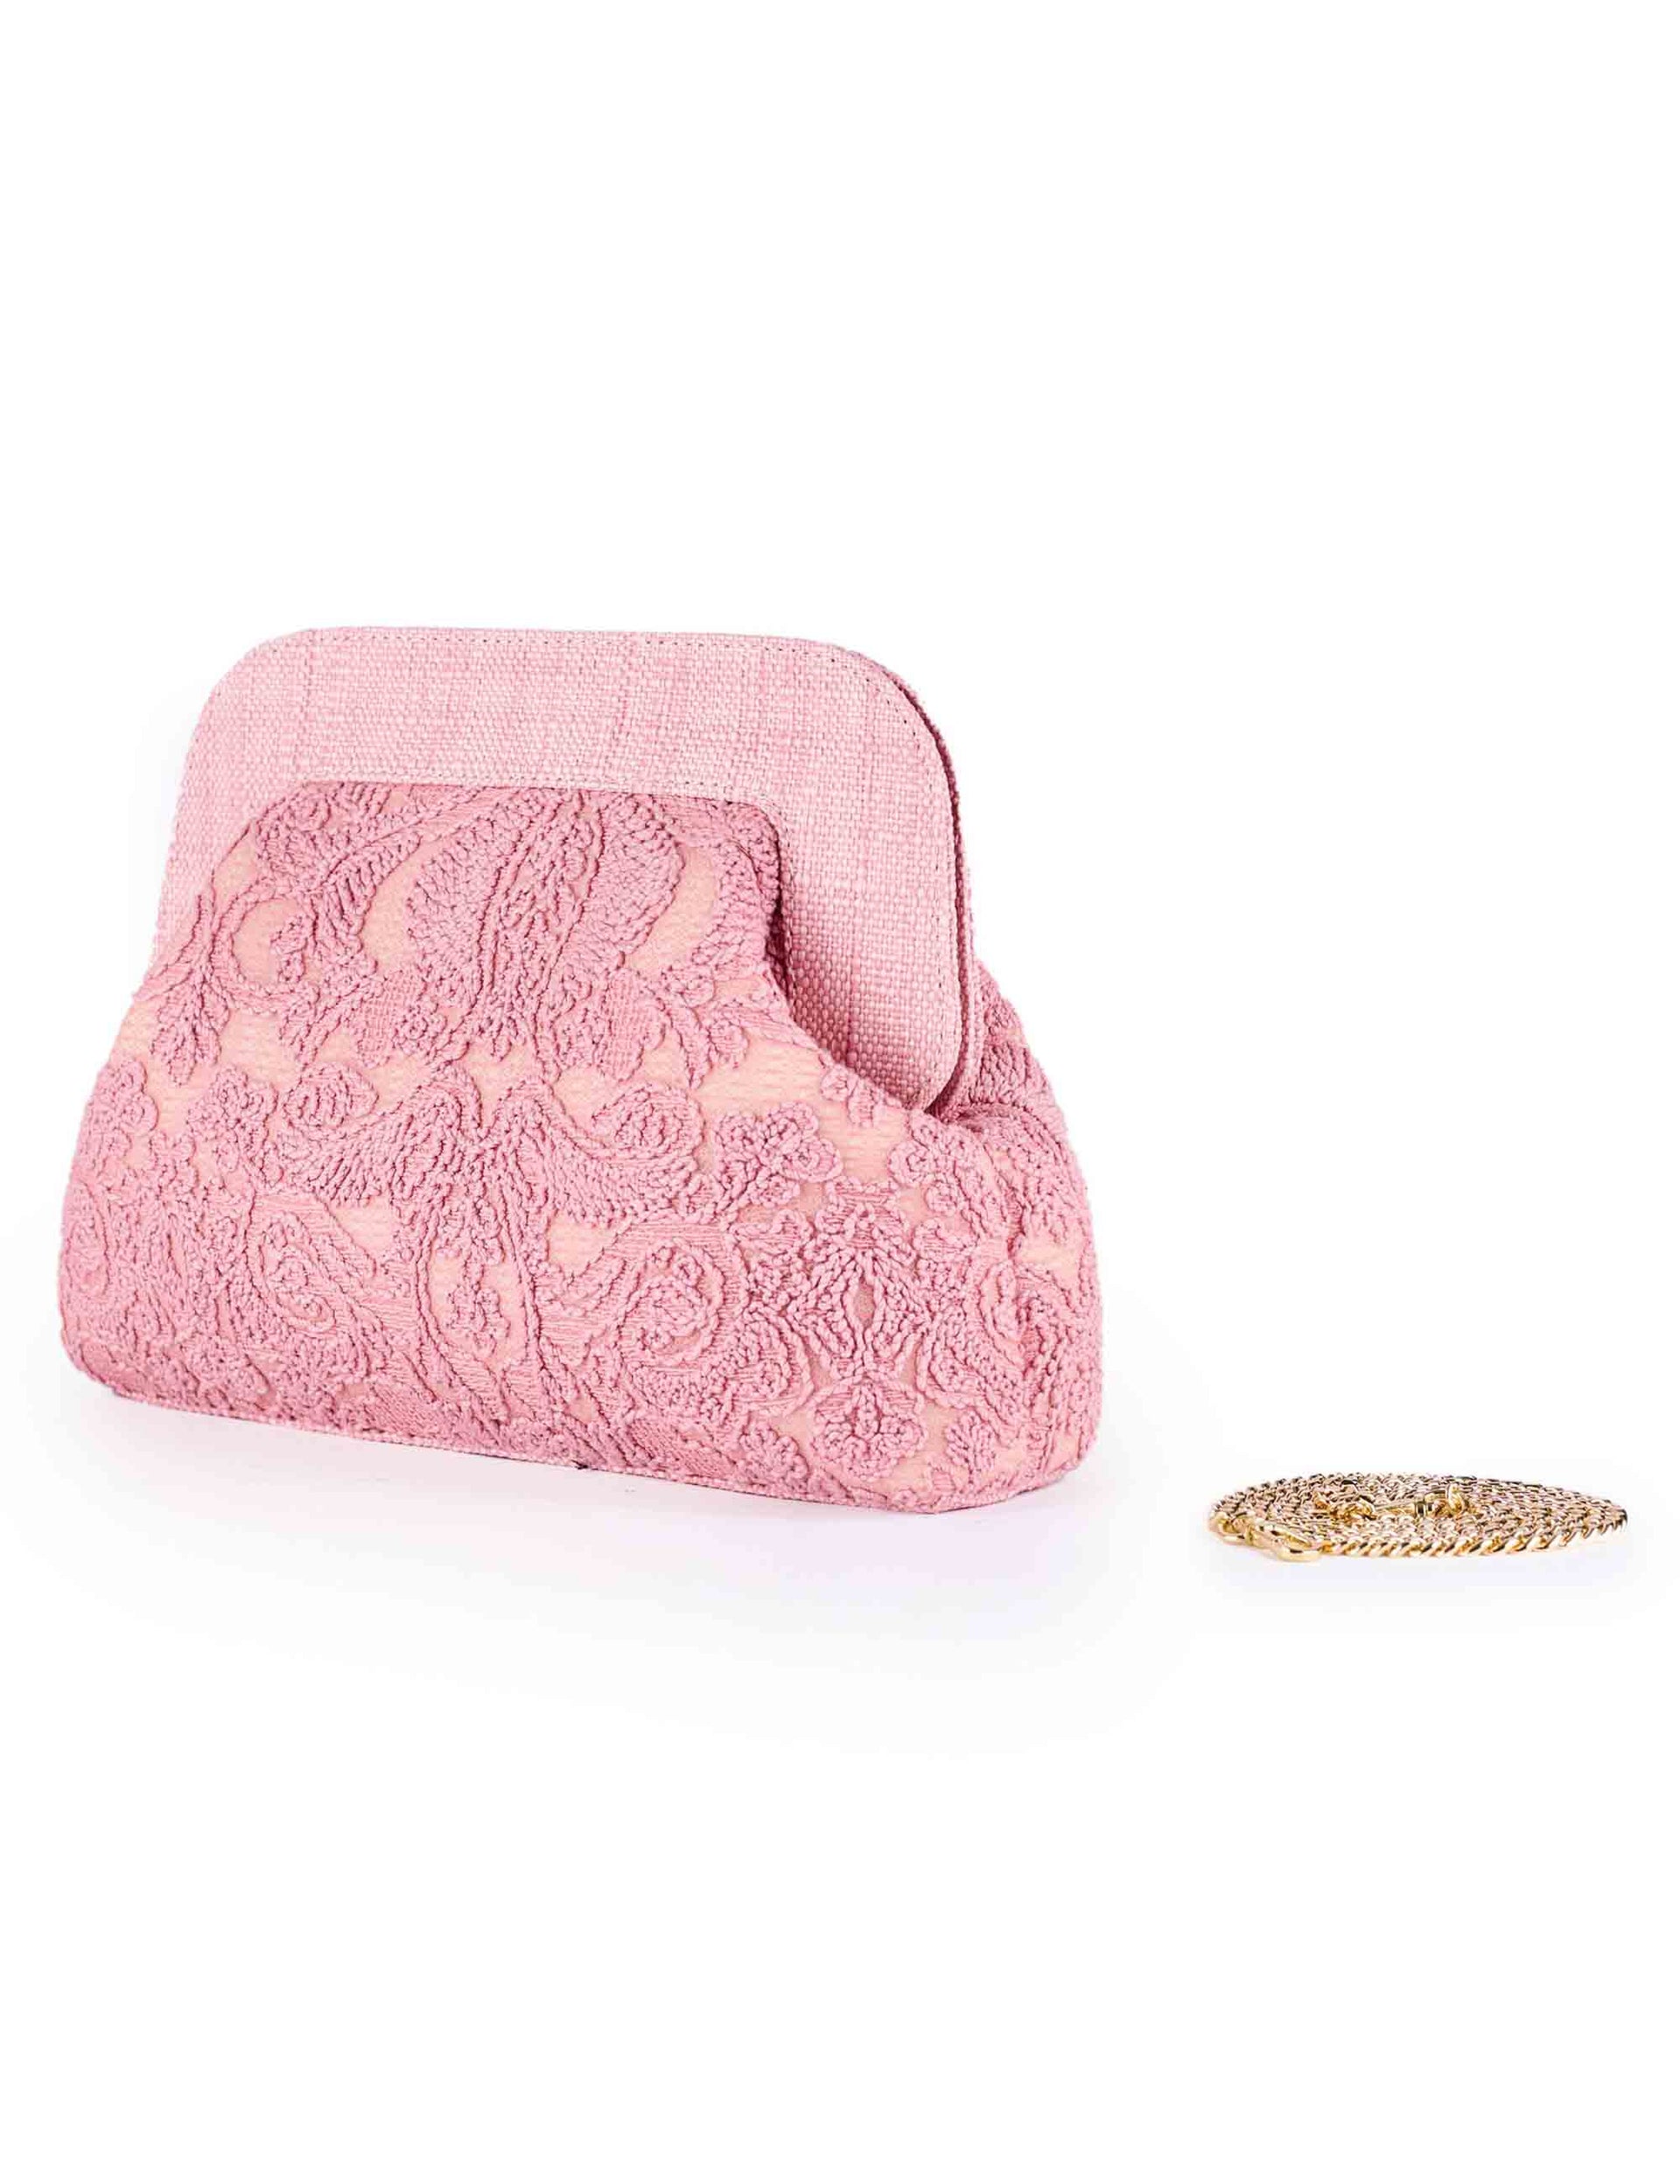 Borse pochette donna in pizzo e raffia rosa con catena oro